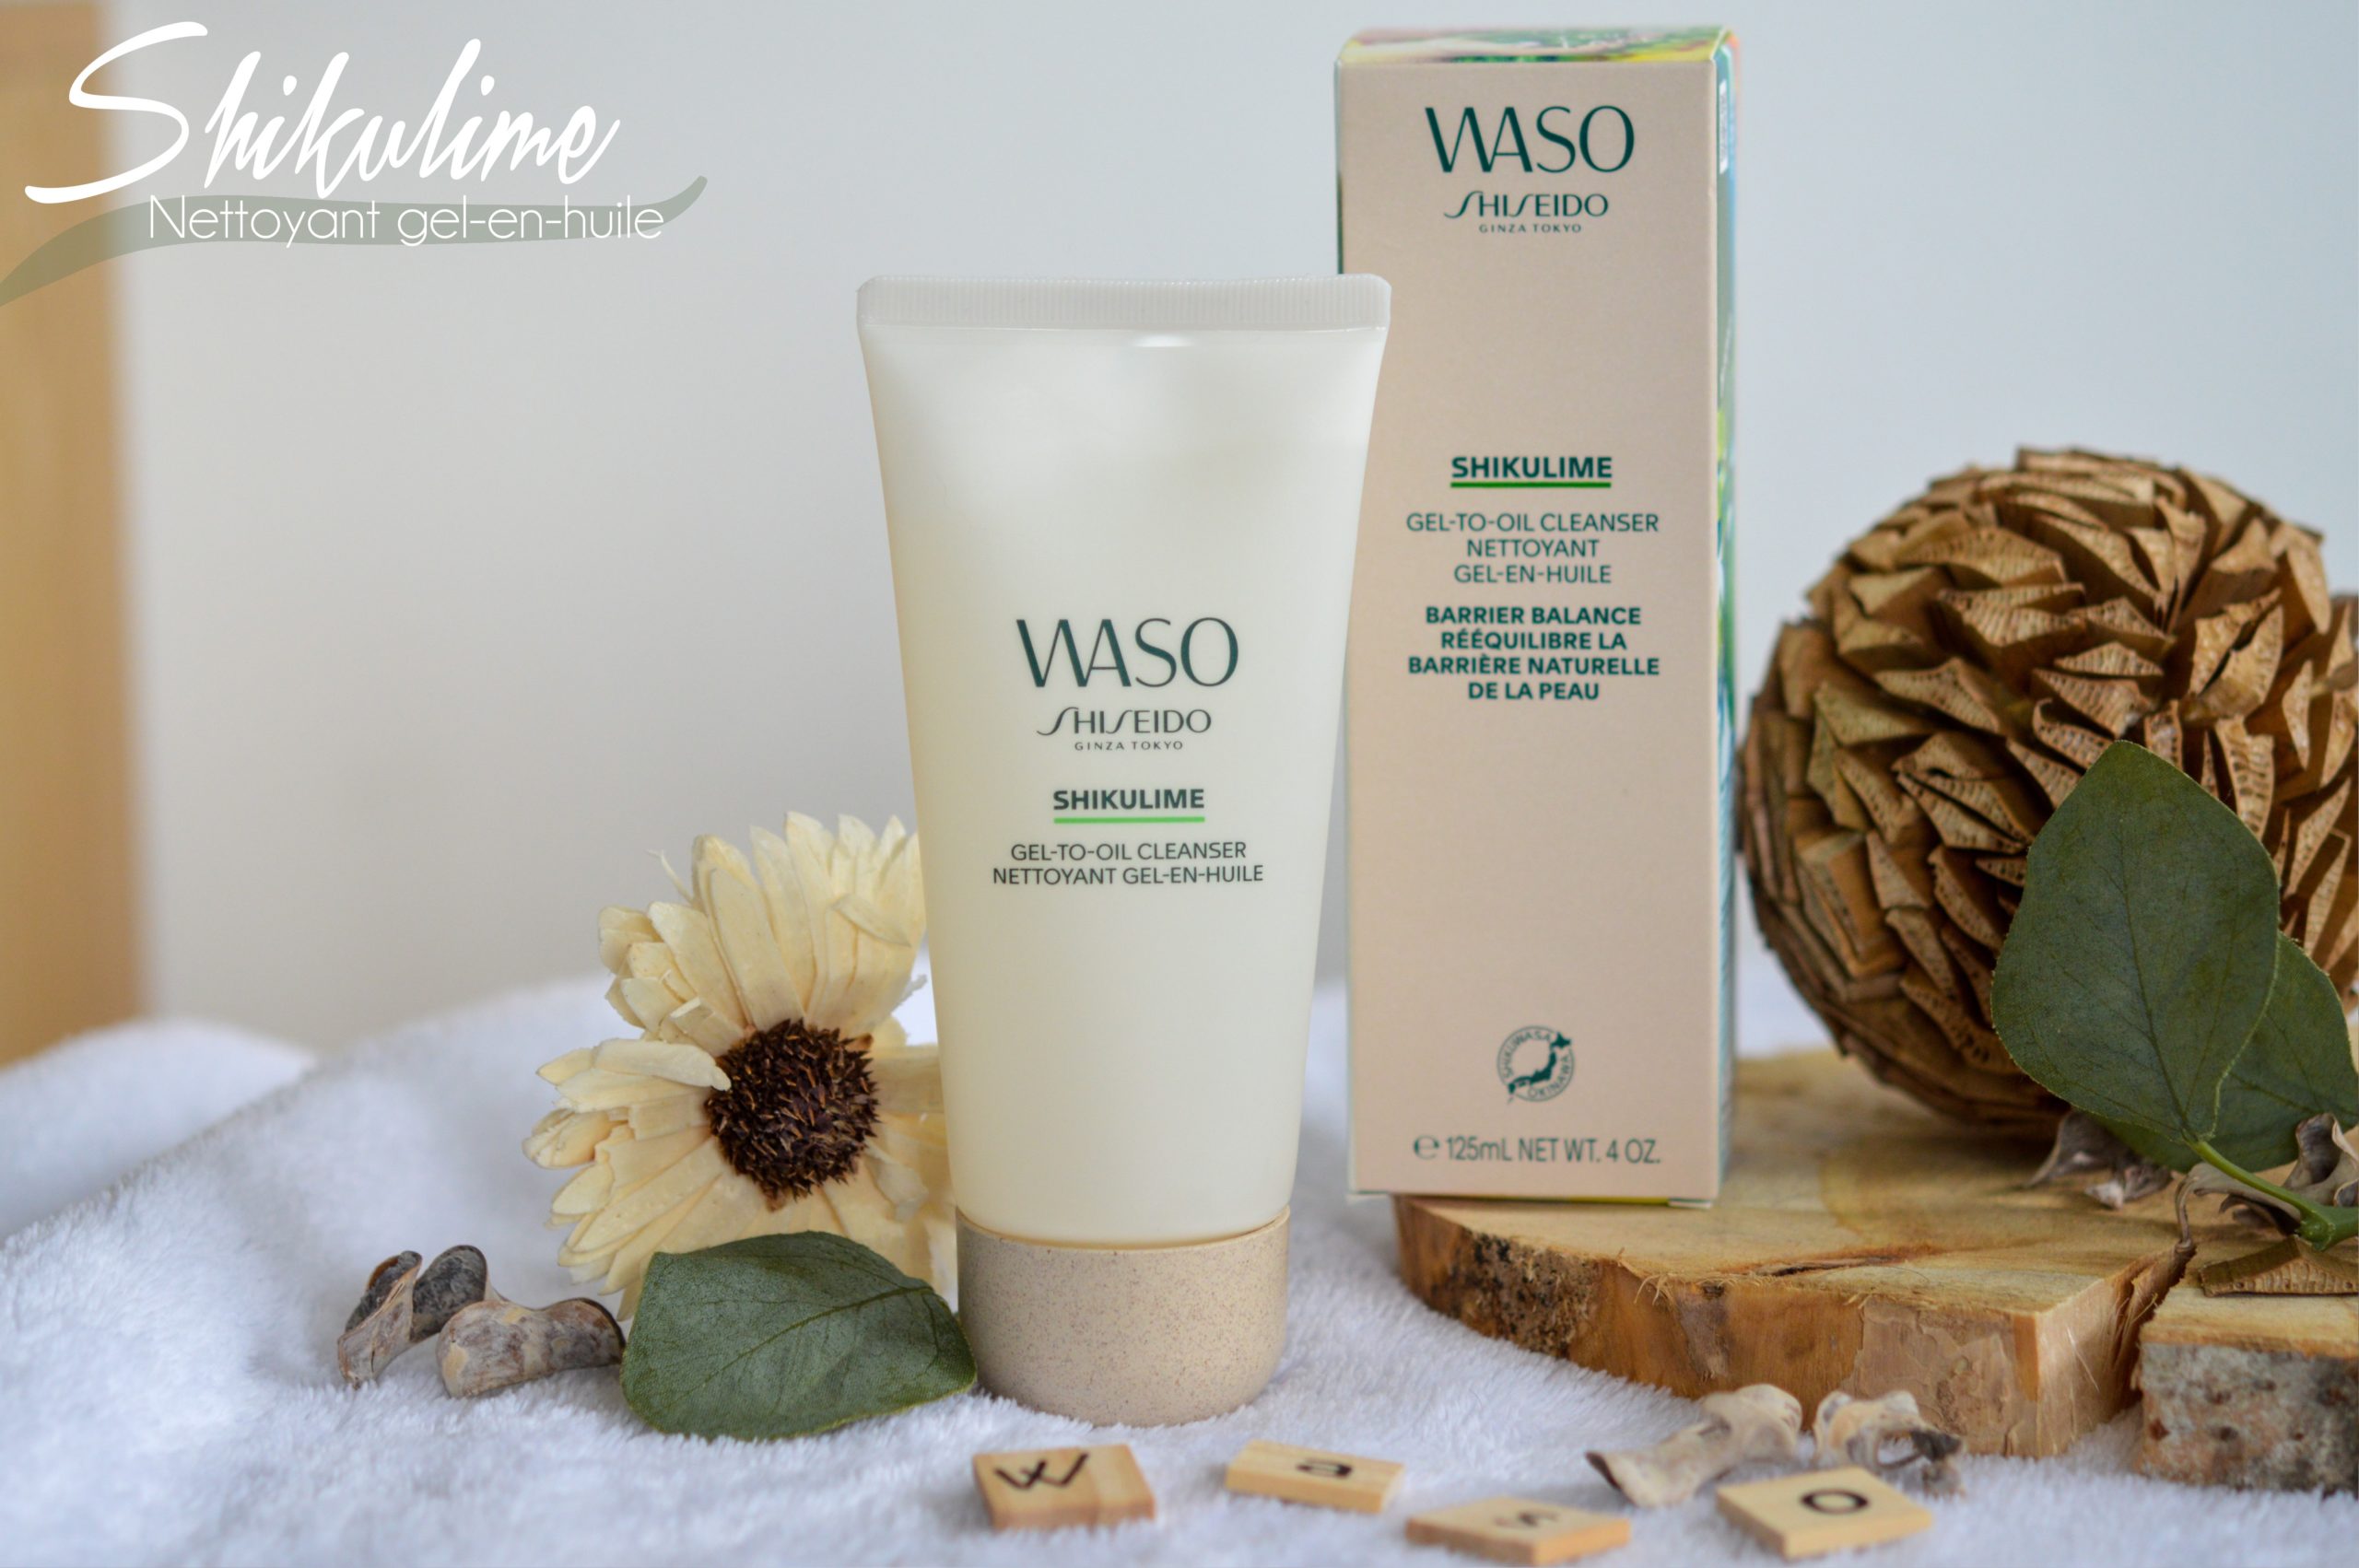 nettoyant gel en huile Waso : pour rééequilibrer la peau et la nettoyer